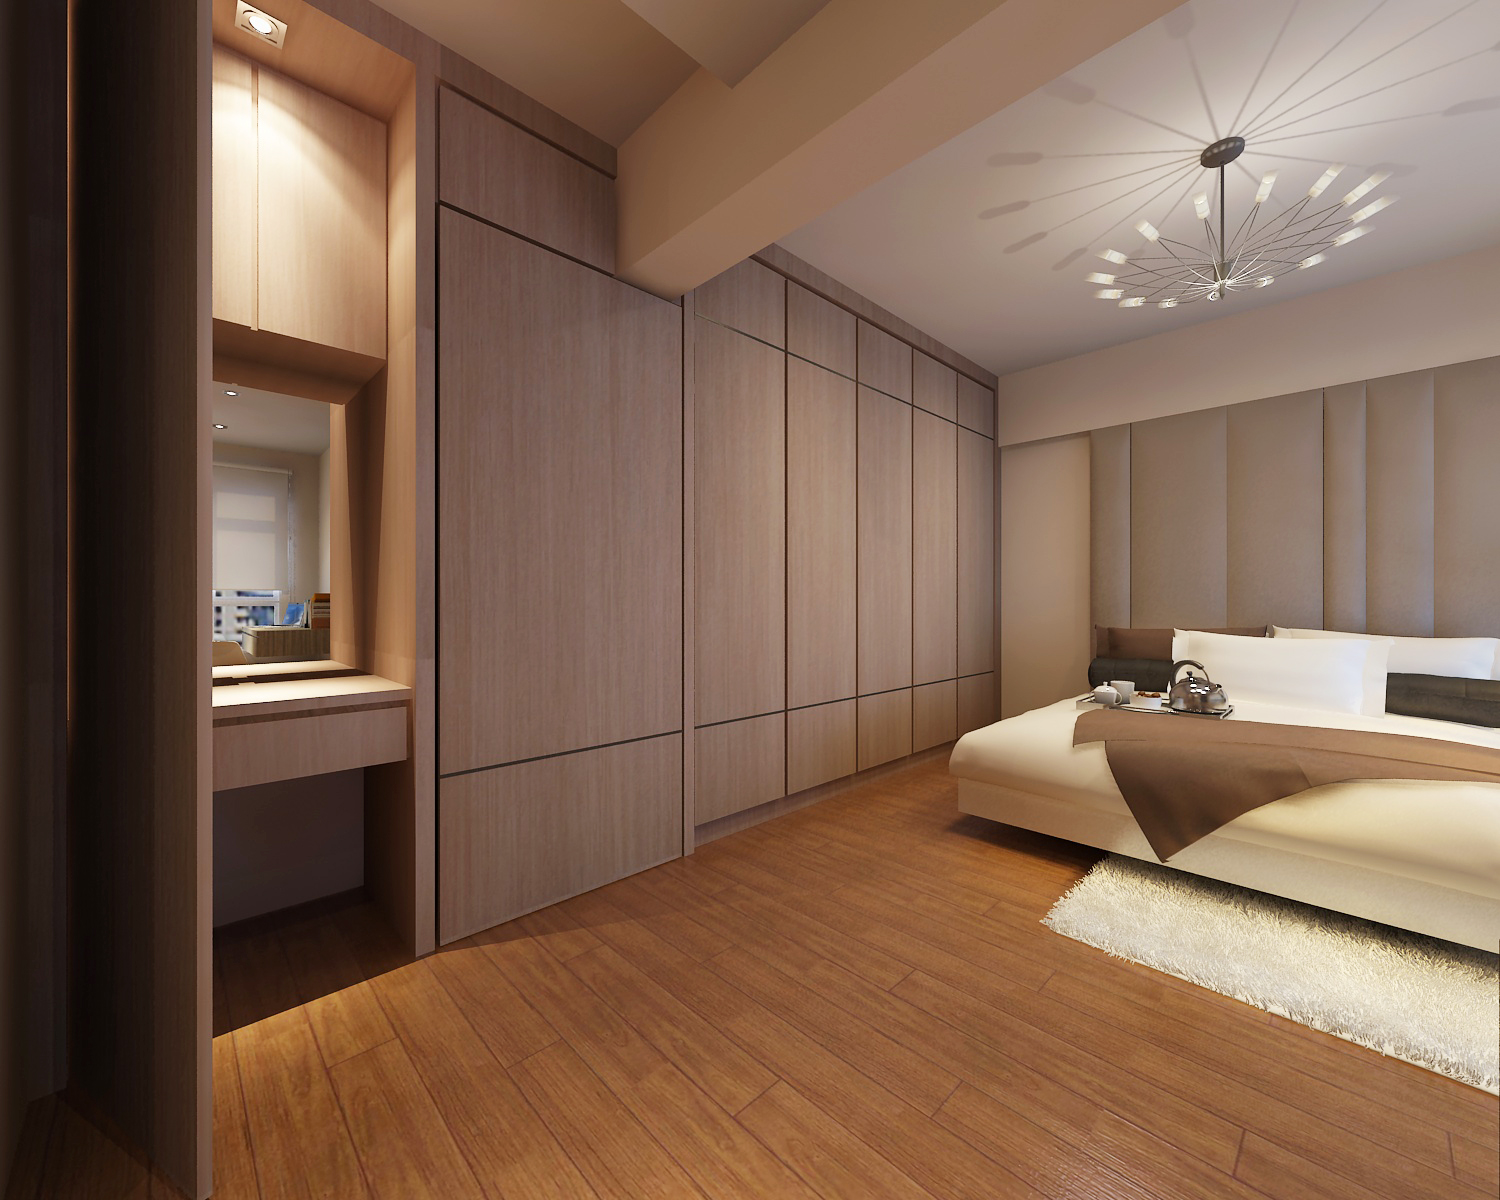 Bedroom Design Ideas Singapore Home Decor